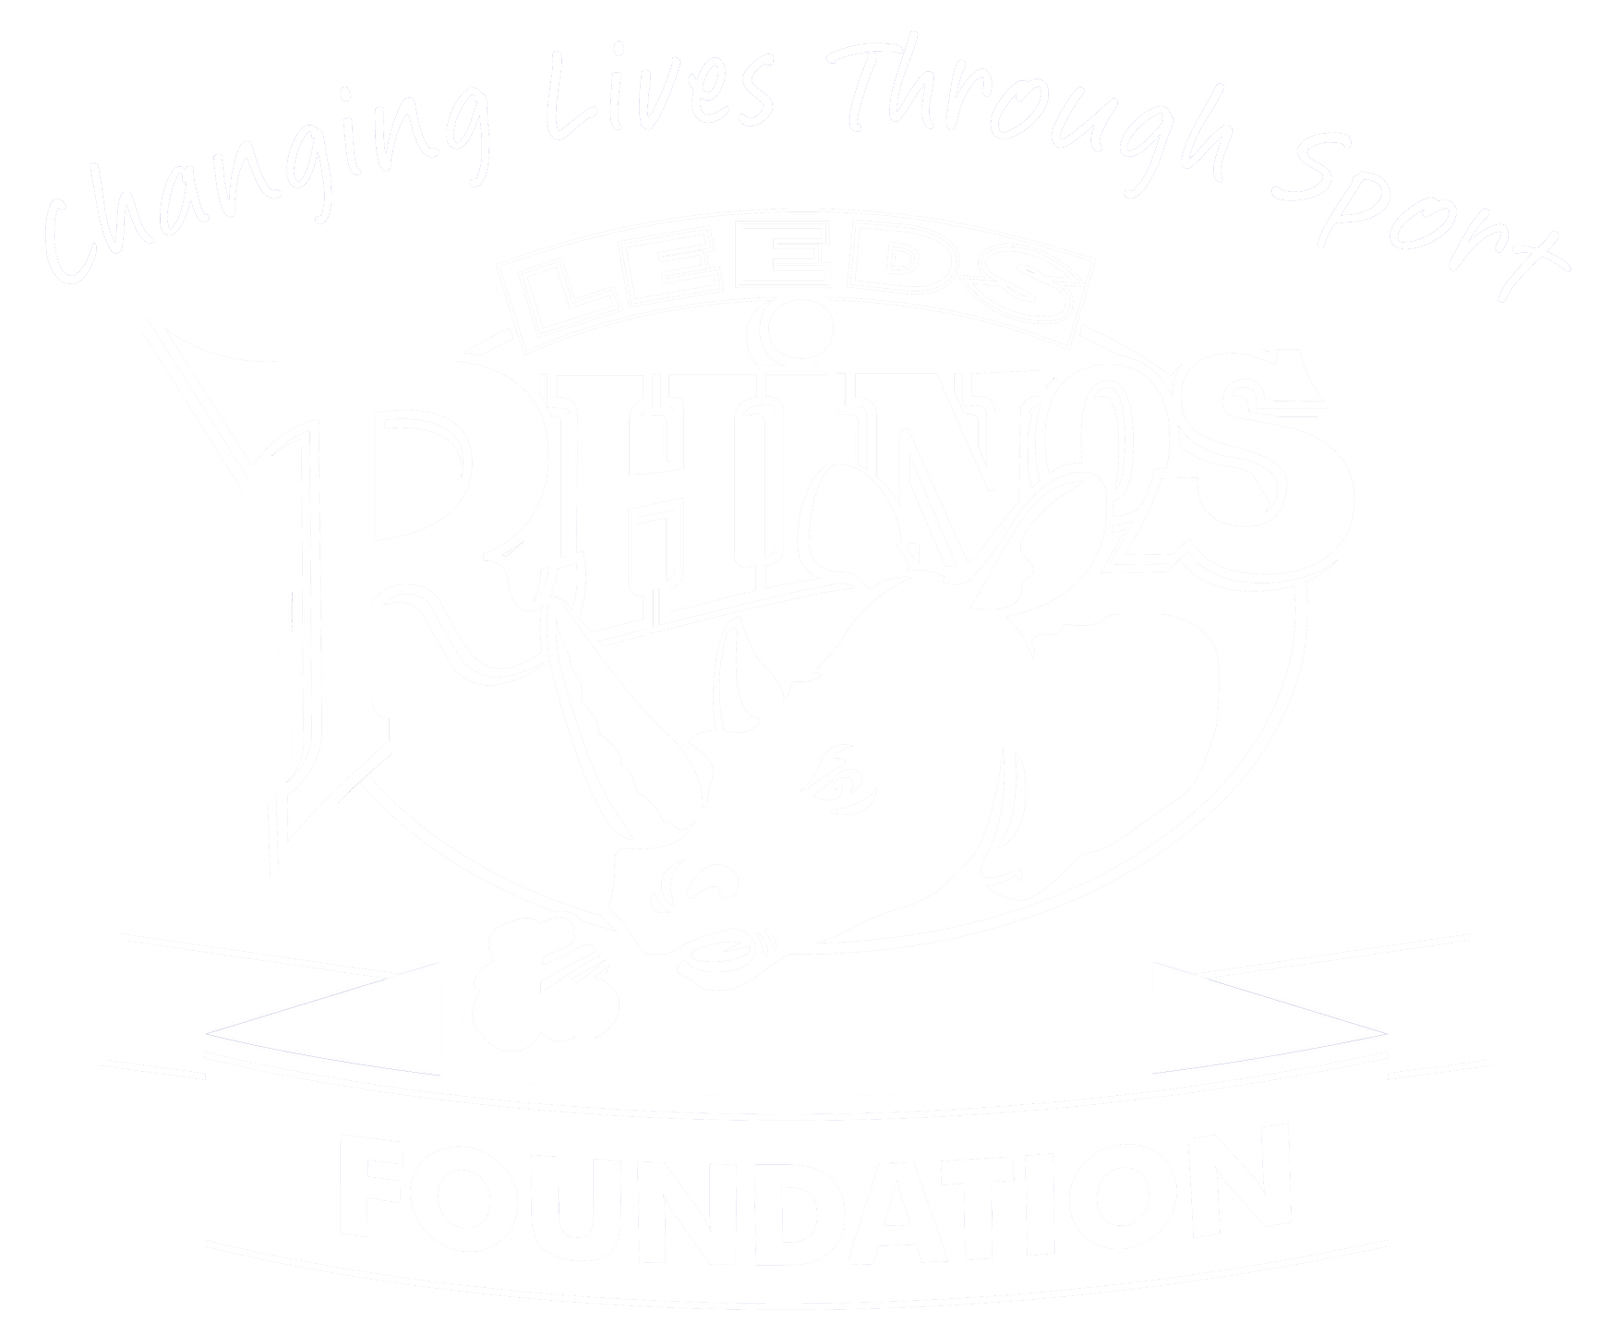 Leeds Rhinos Foundation